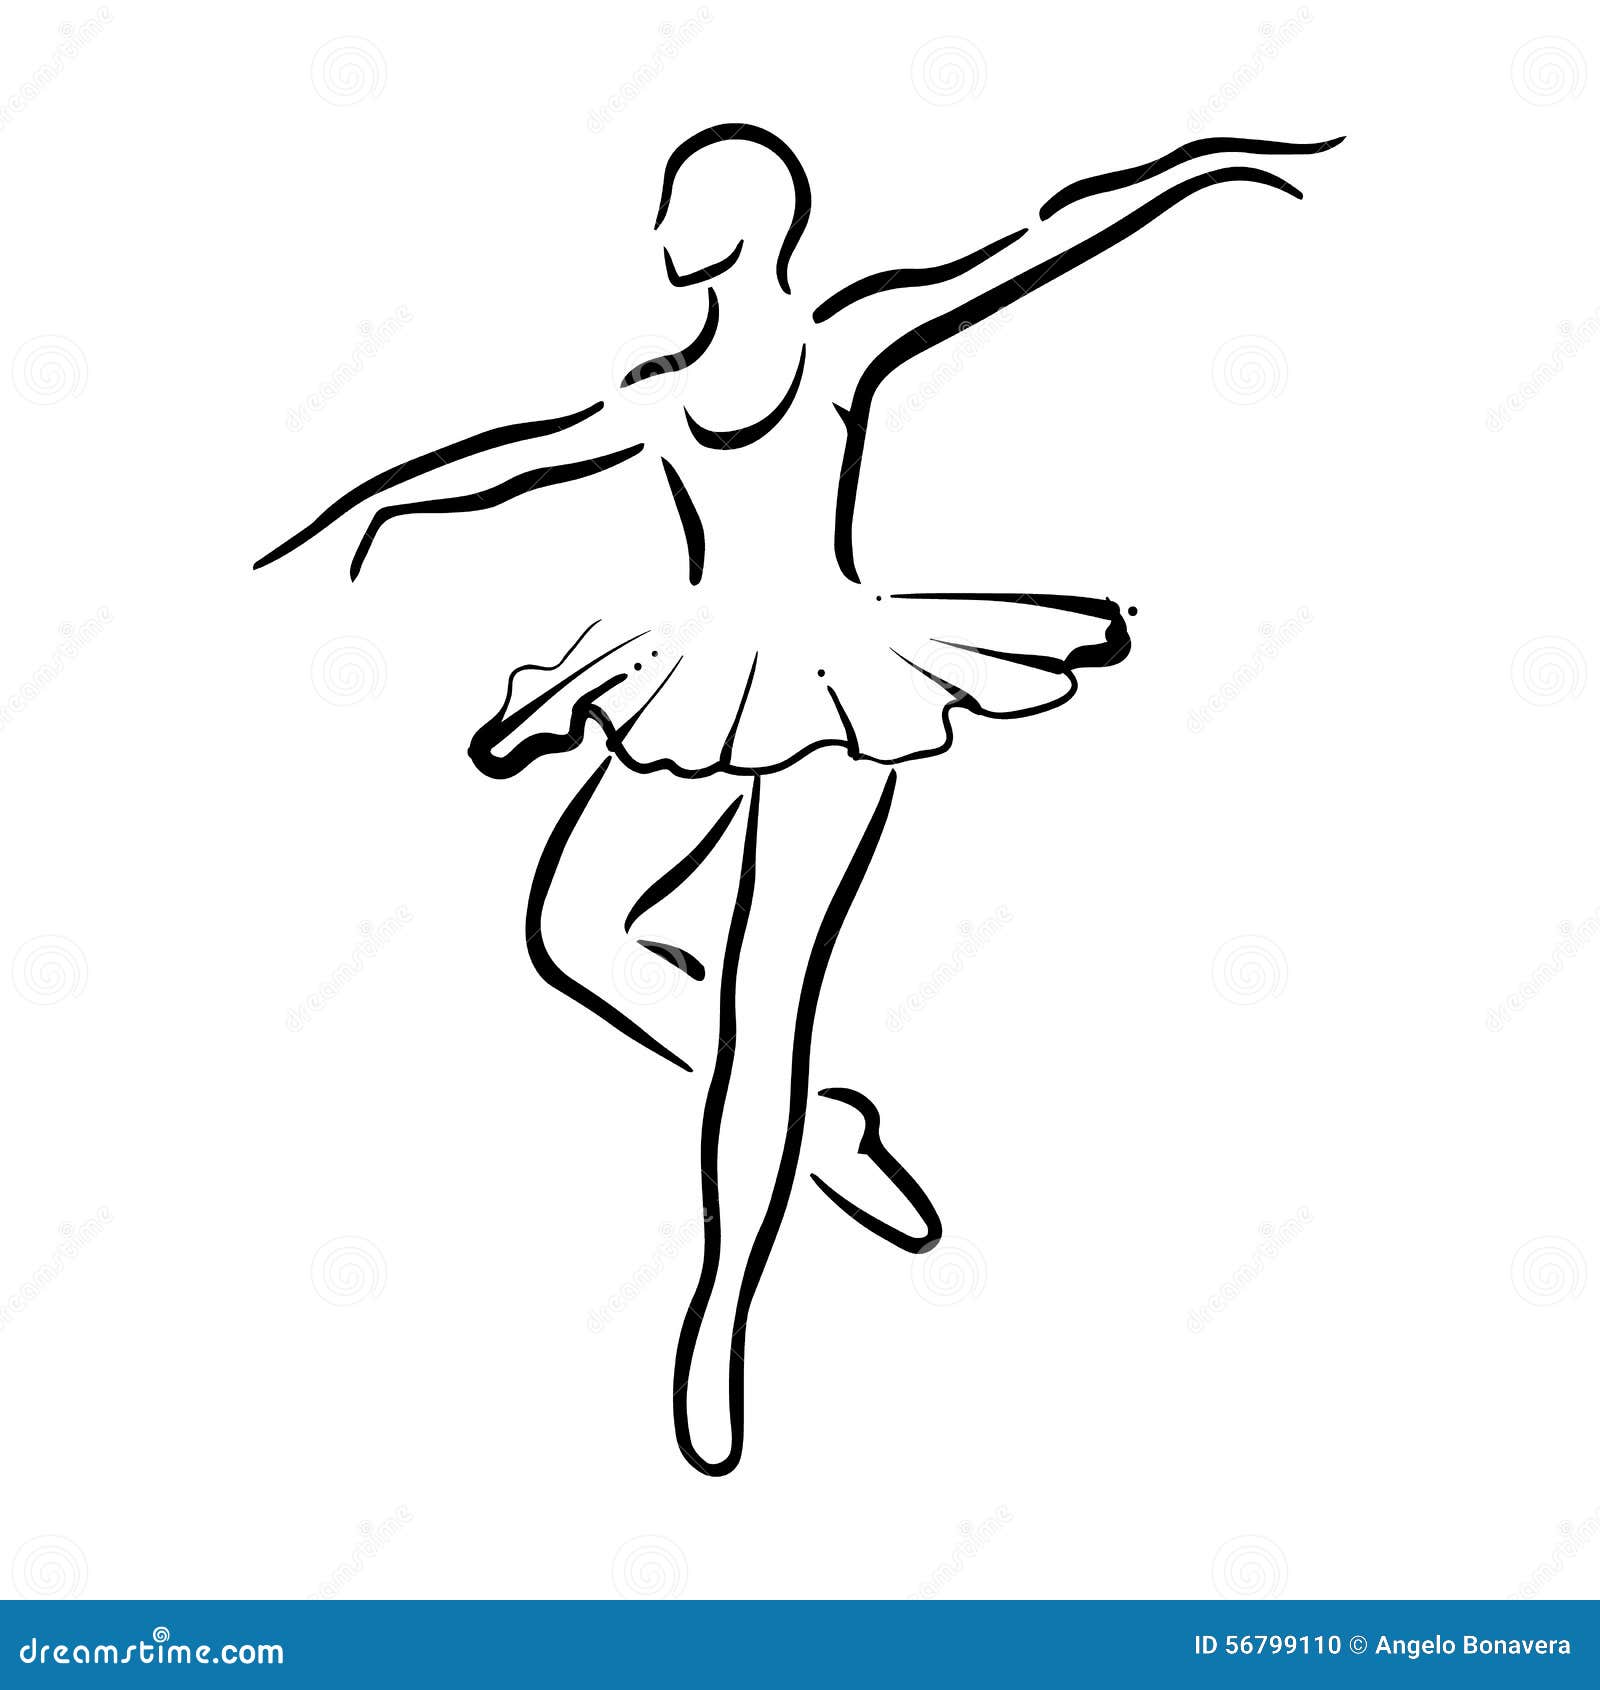 芭蕾舞蹈简笔画图片 芭蕾舞蹈简笔画 - 电影天堂